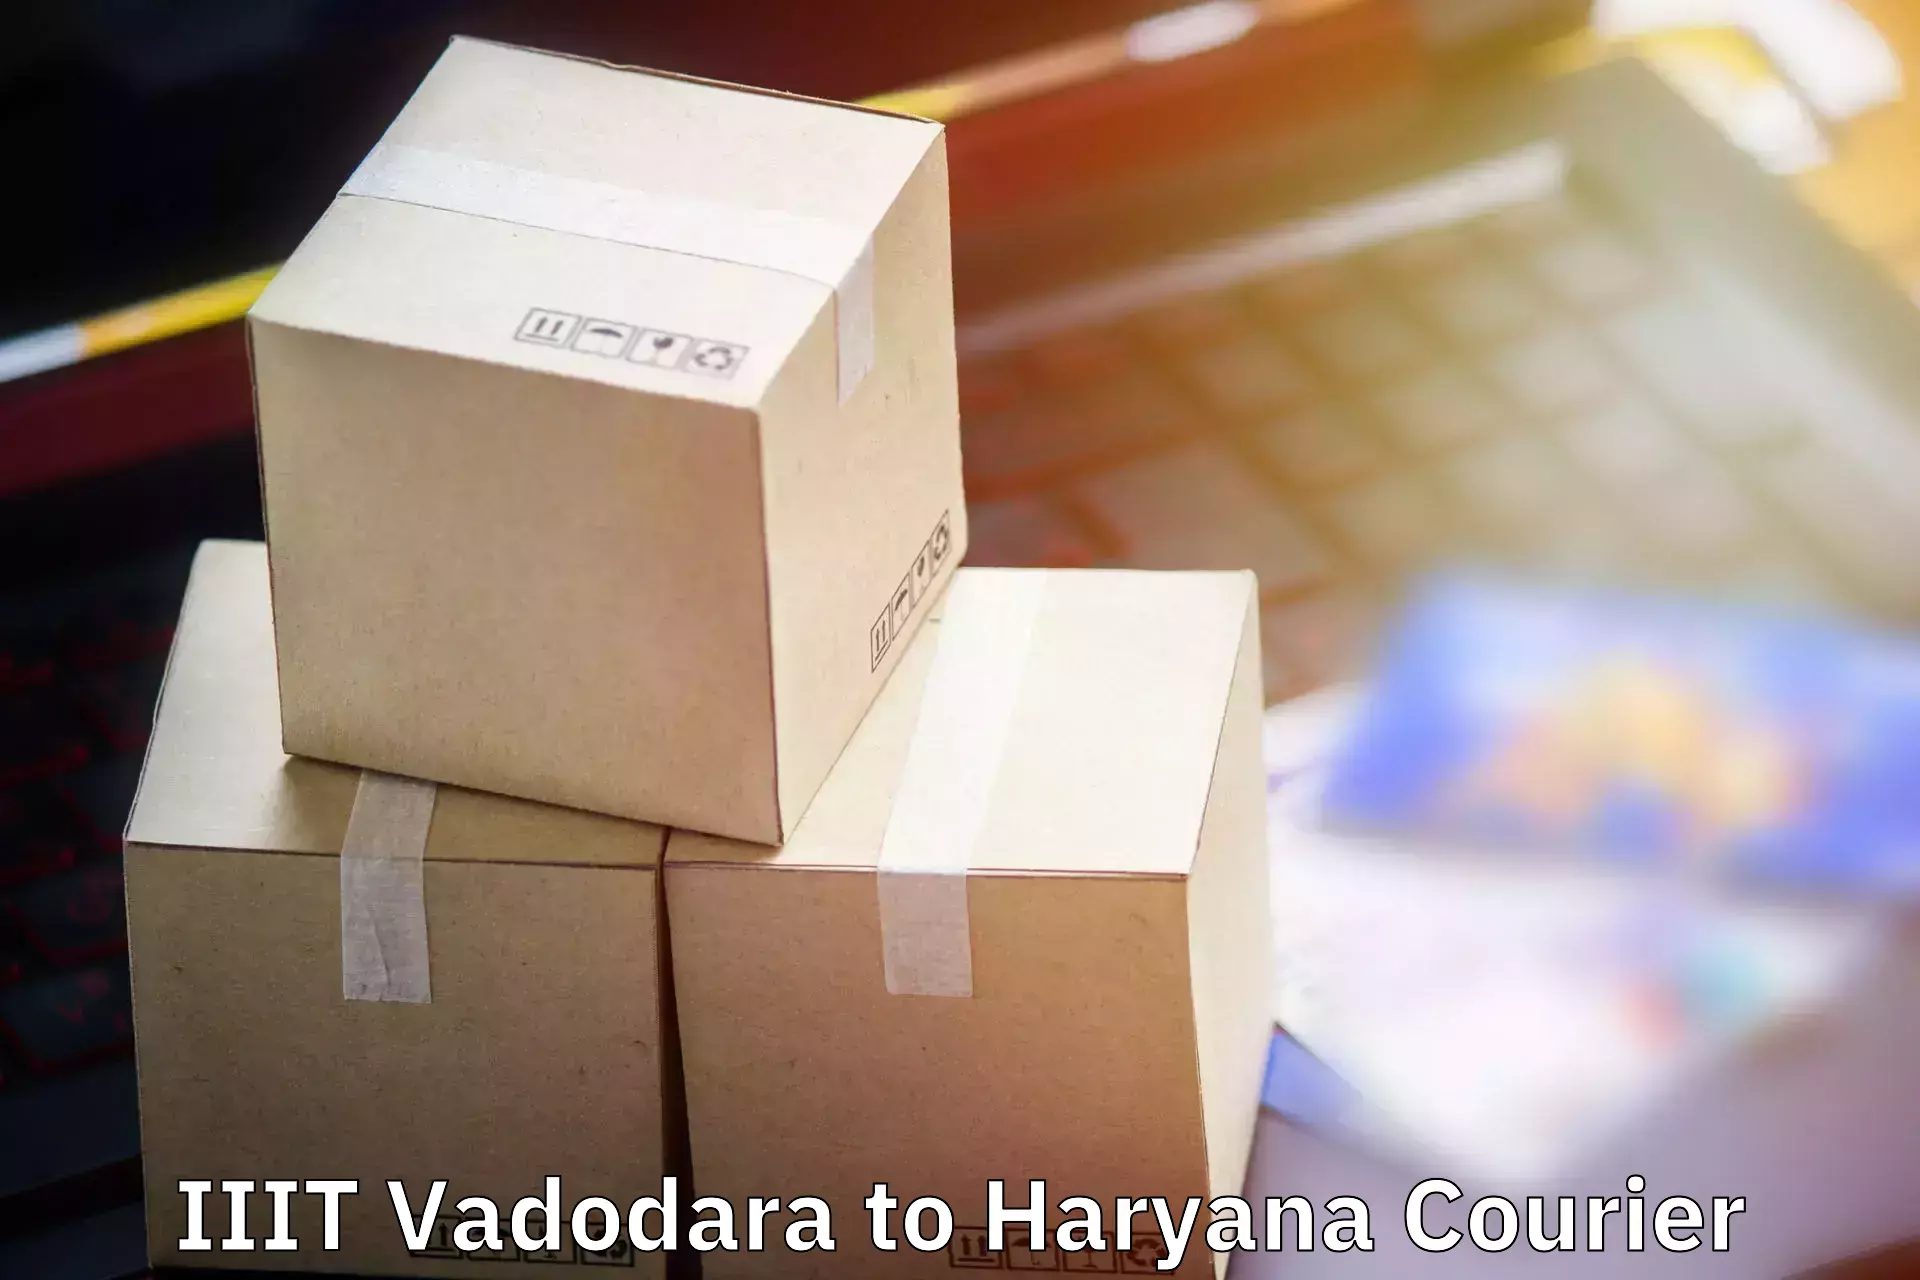 Electronic items luggage shipping IIIT Vadodara to Charkhi Dadri